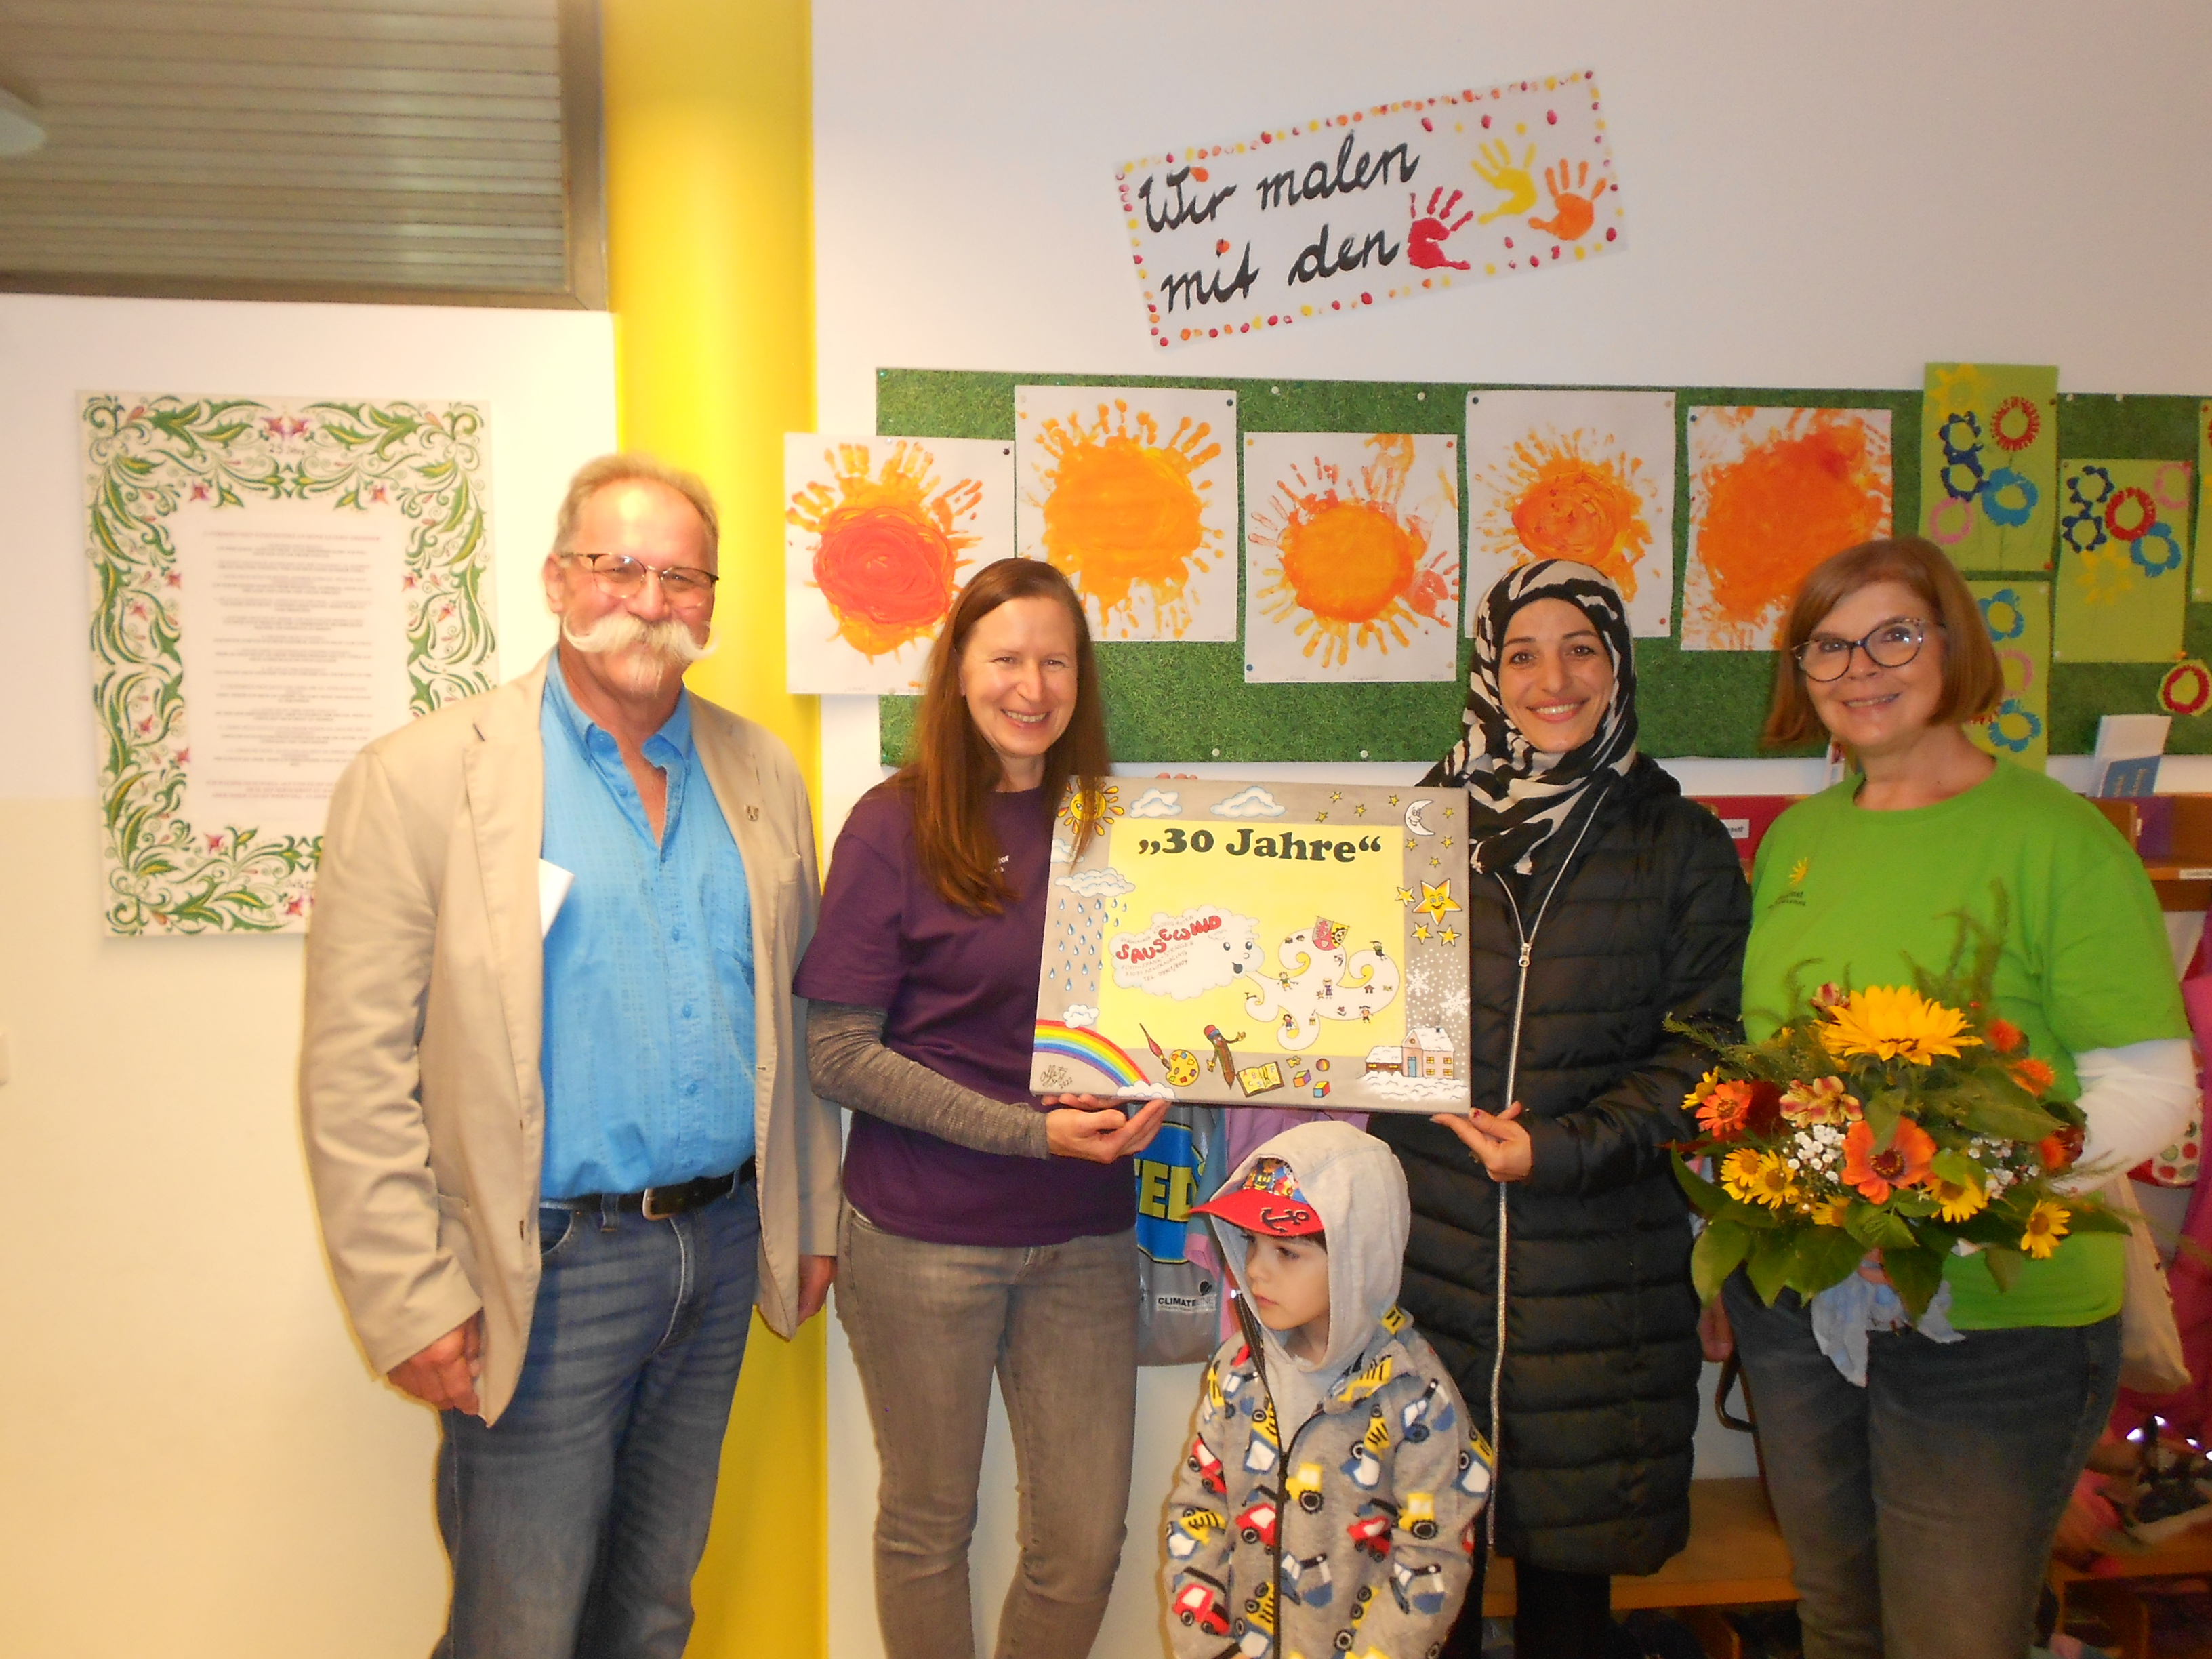 Tag der offenen Tür zum 30jährigen Jubiläum des Kindergartens Sausewin